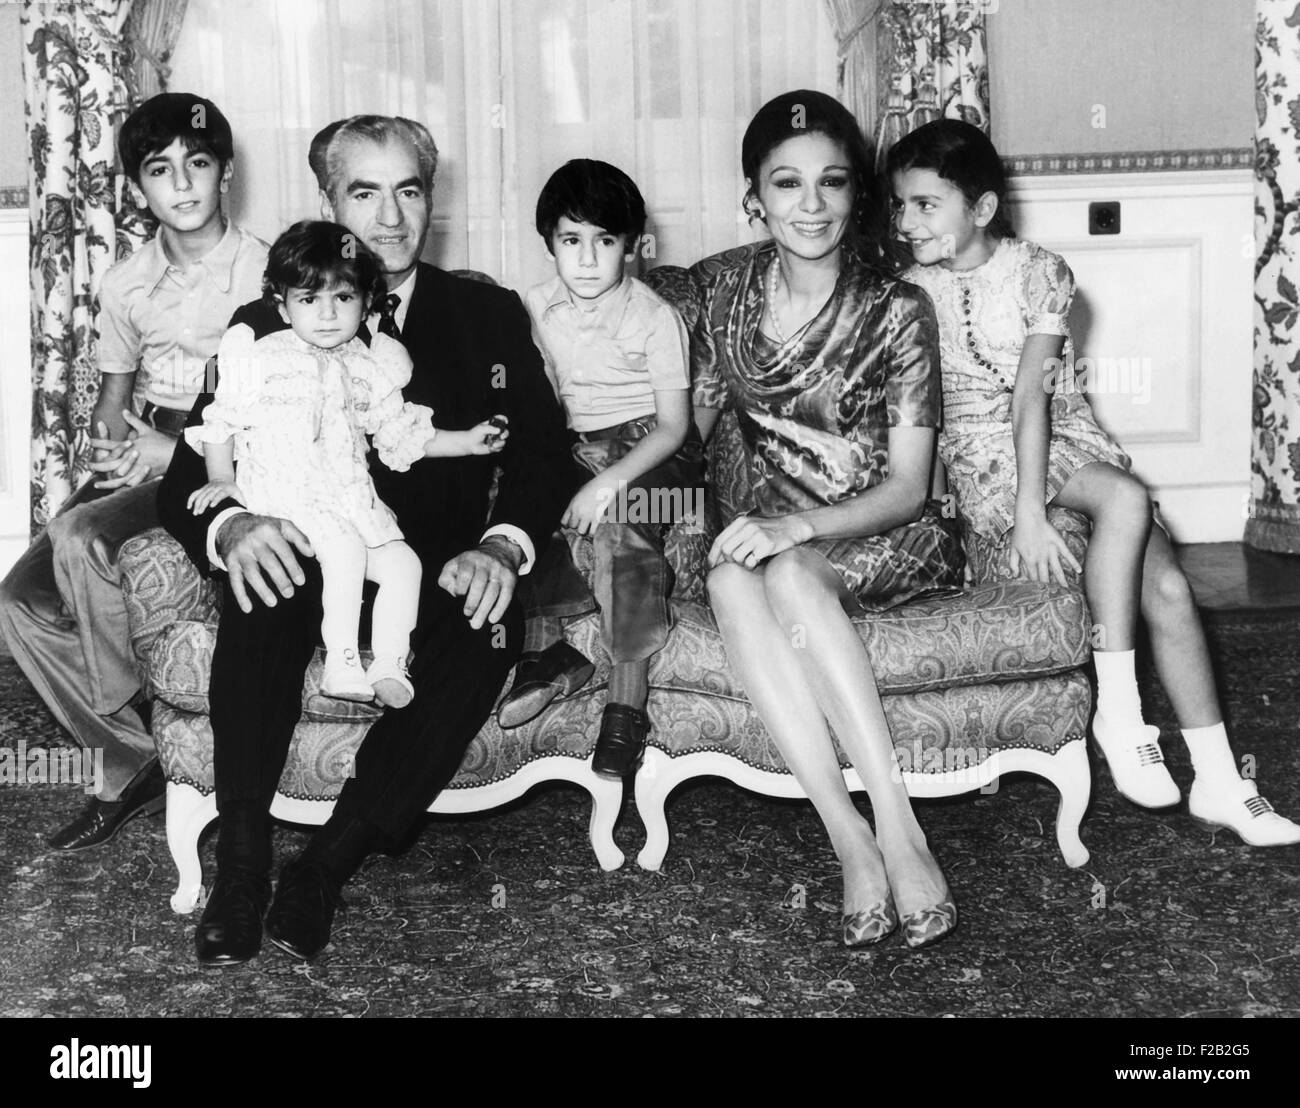 Scià dell'Iran pone con la sua famiglia, Sett. 22, 1971. L-R: Il Principe Ereditario Reza, 11; la principessa Leila, diciotto mesi, che era sulla Shaw del ginocchio; il principe Ali Reza, 5, e l'Imperatrice Farah e la principessa Farahraz, 8. (CSU 2015 8 524) Foto Stock